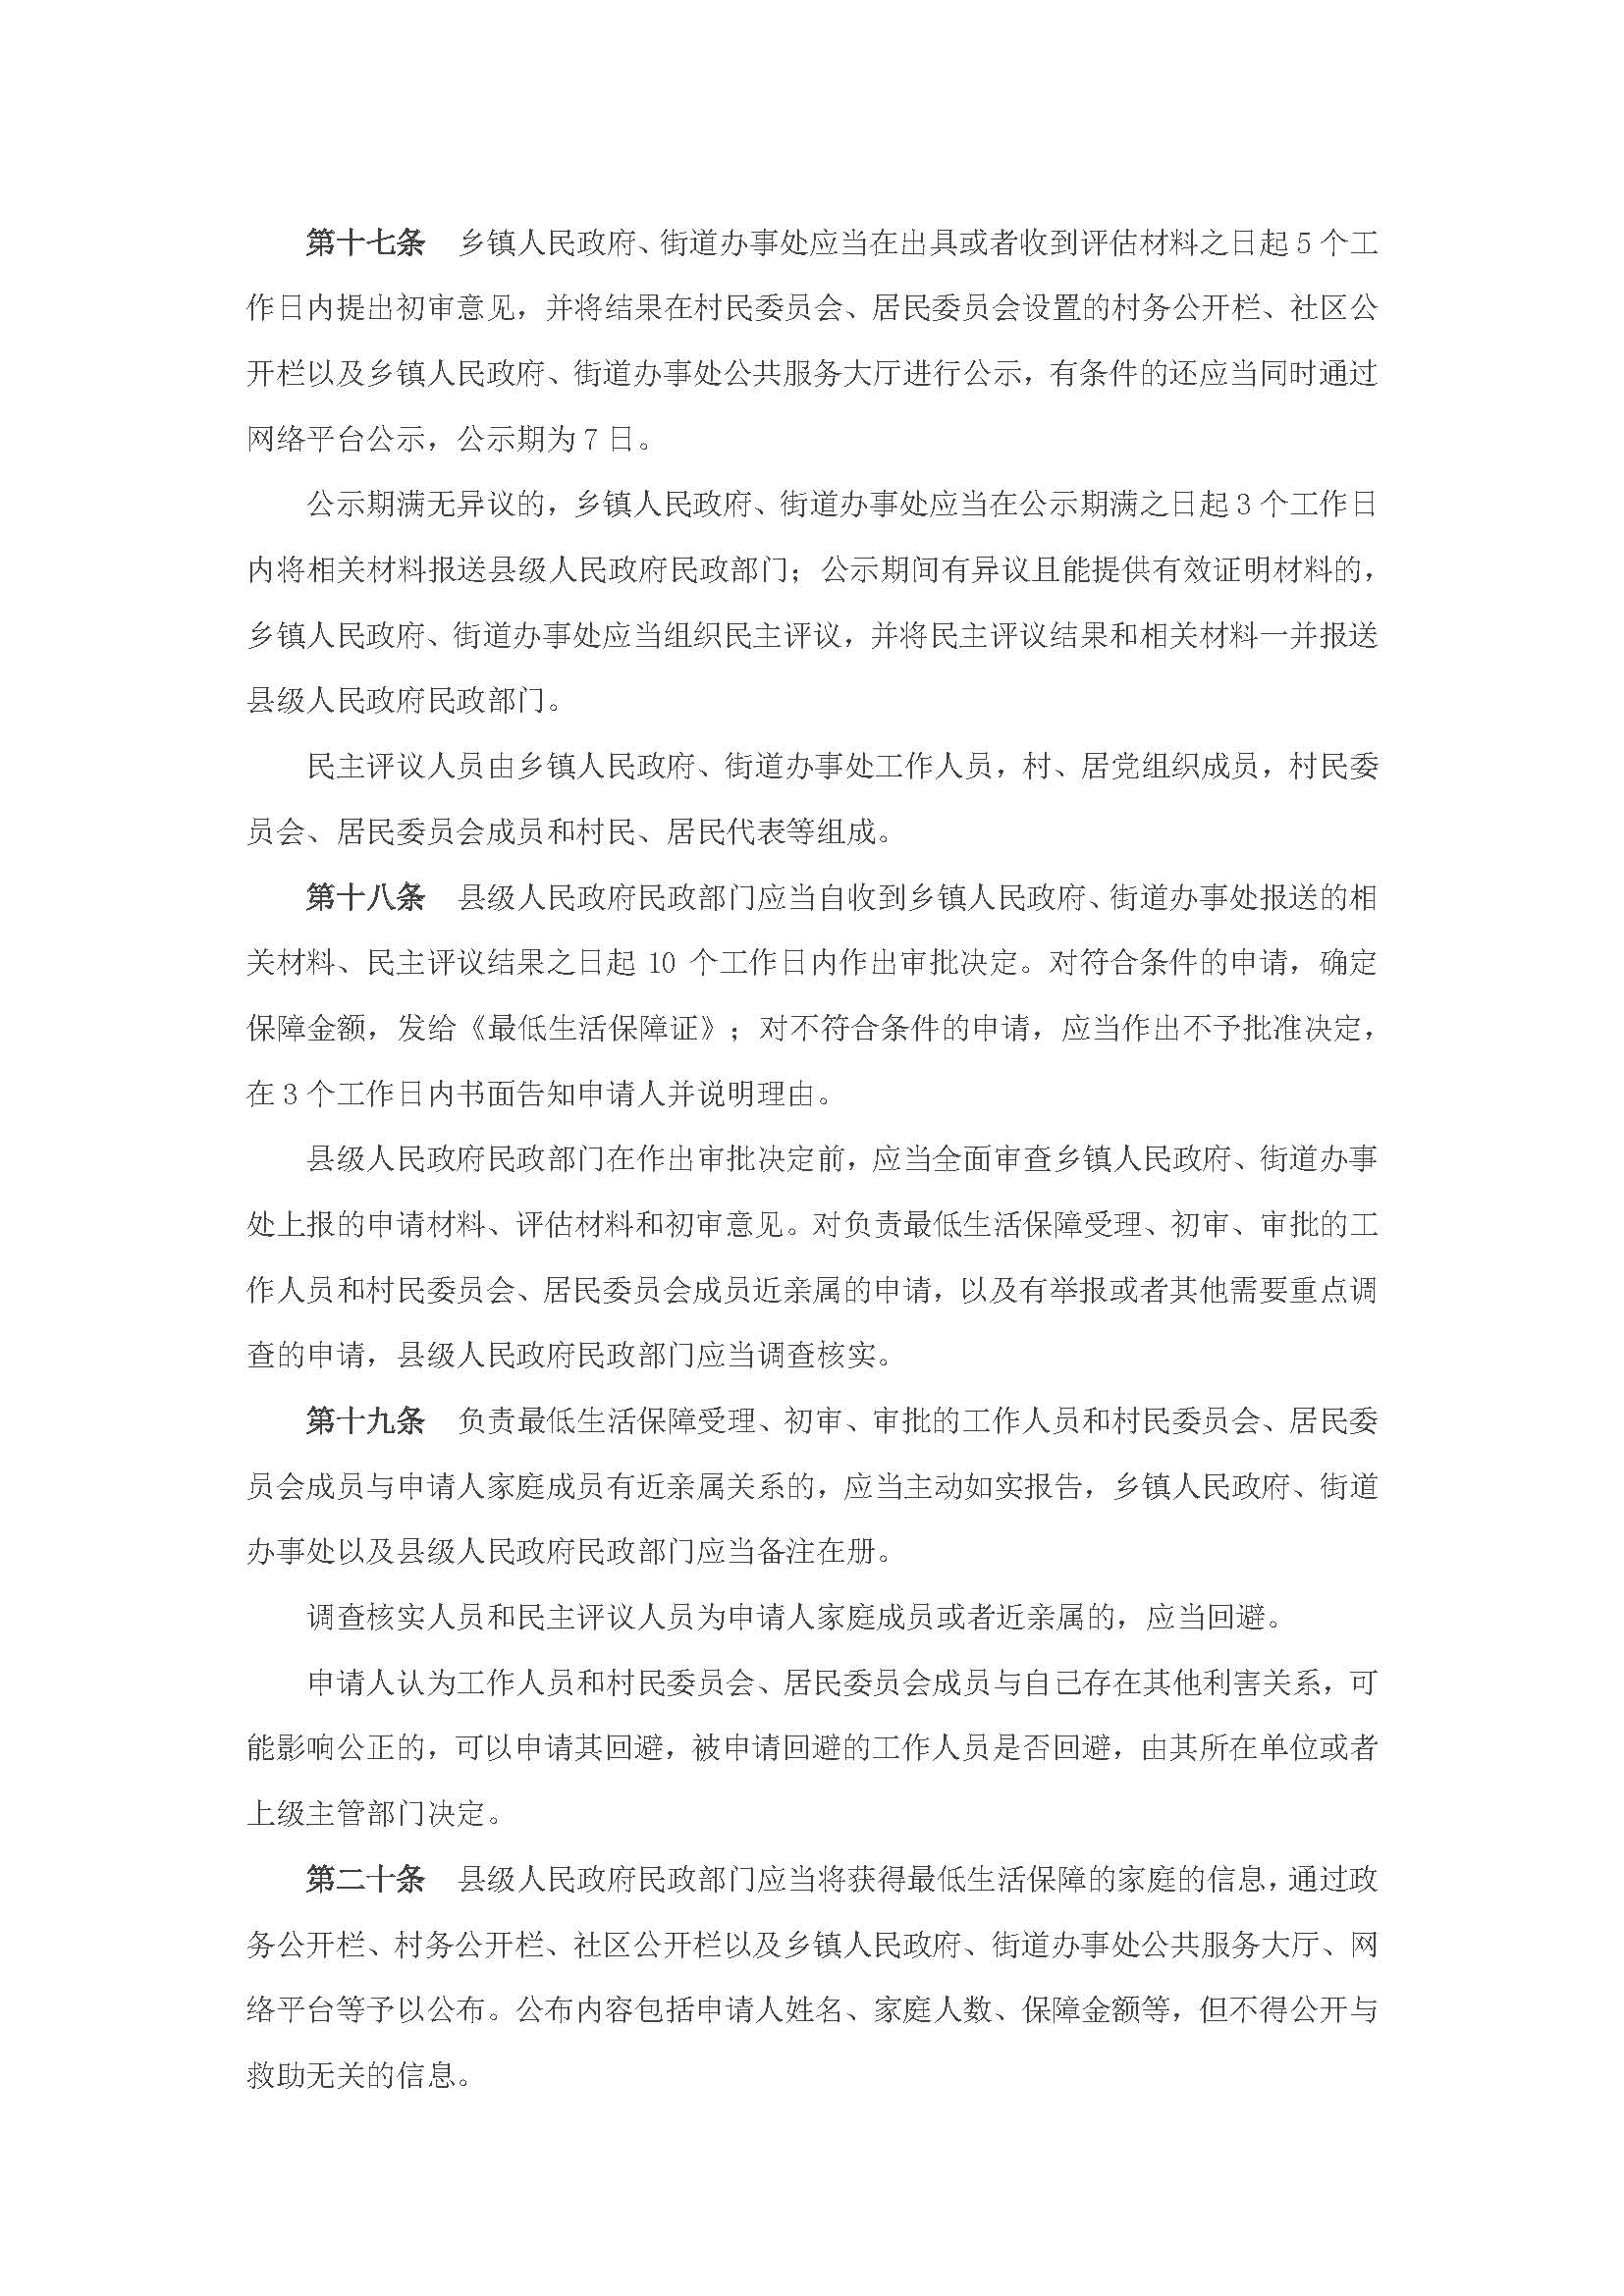 广东省最低生活保障制度实施办法_页面_6.jpg